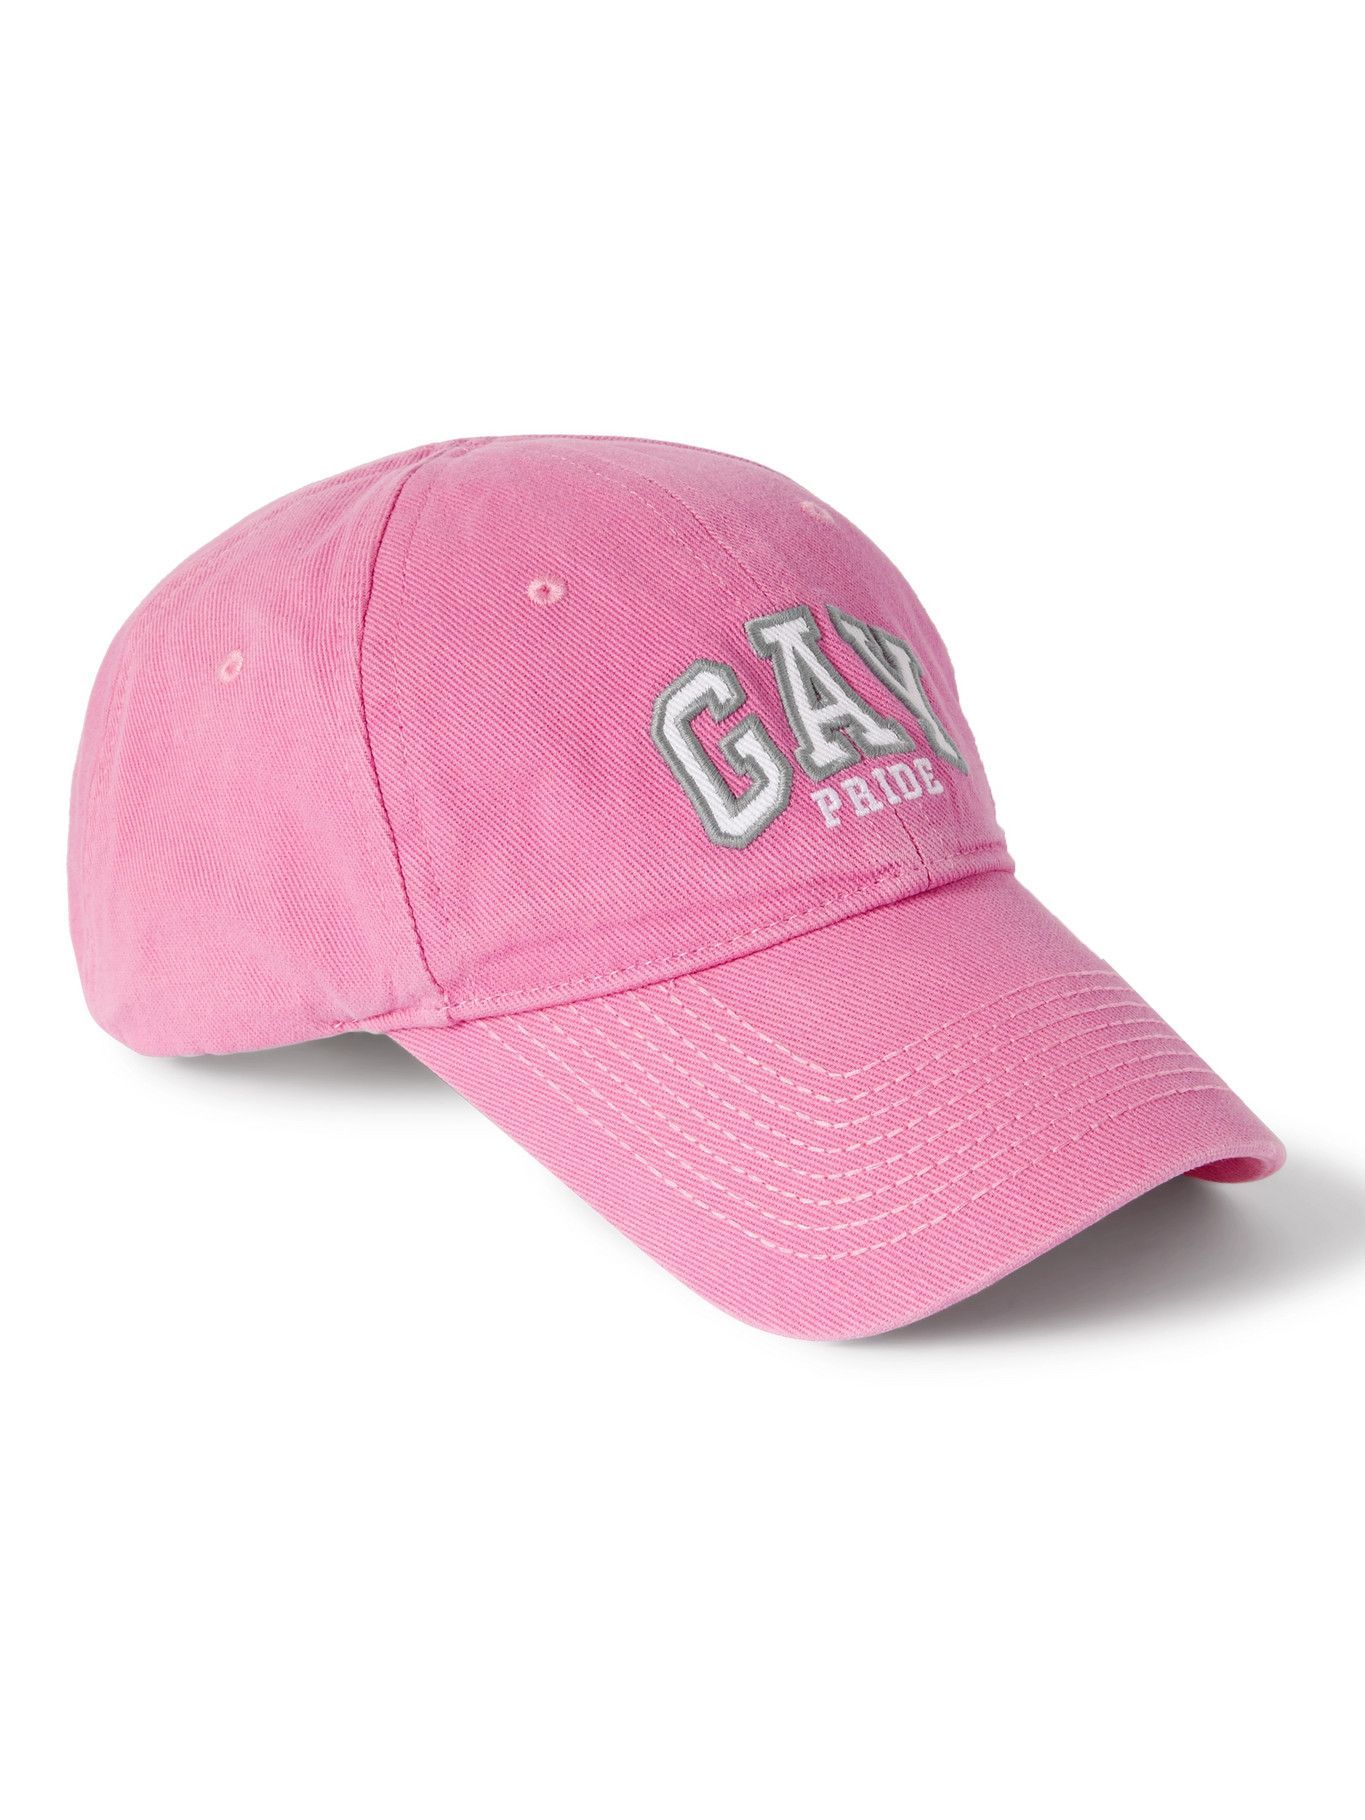 Balenciaga - Embroidered Cotton-Twill Baseball Cap - Pink Balenciaga